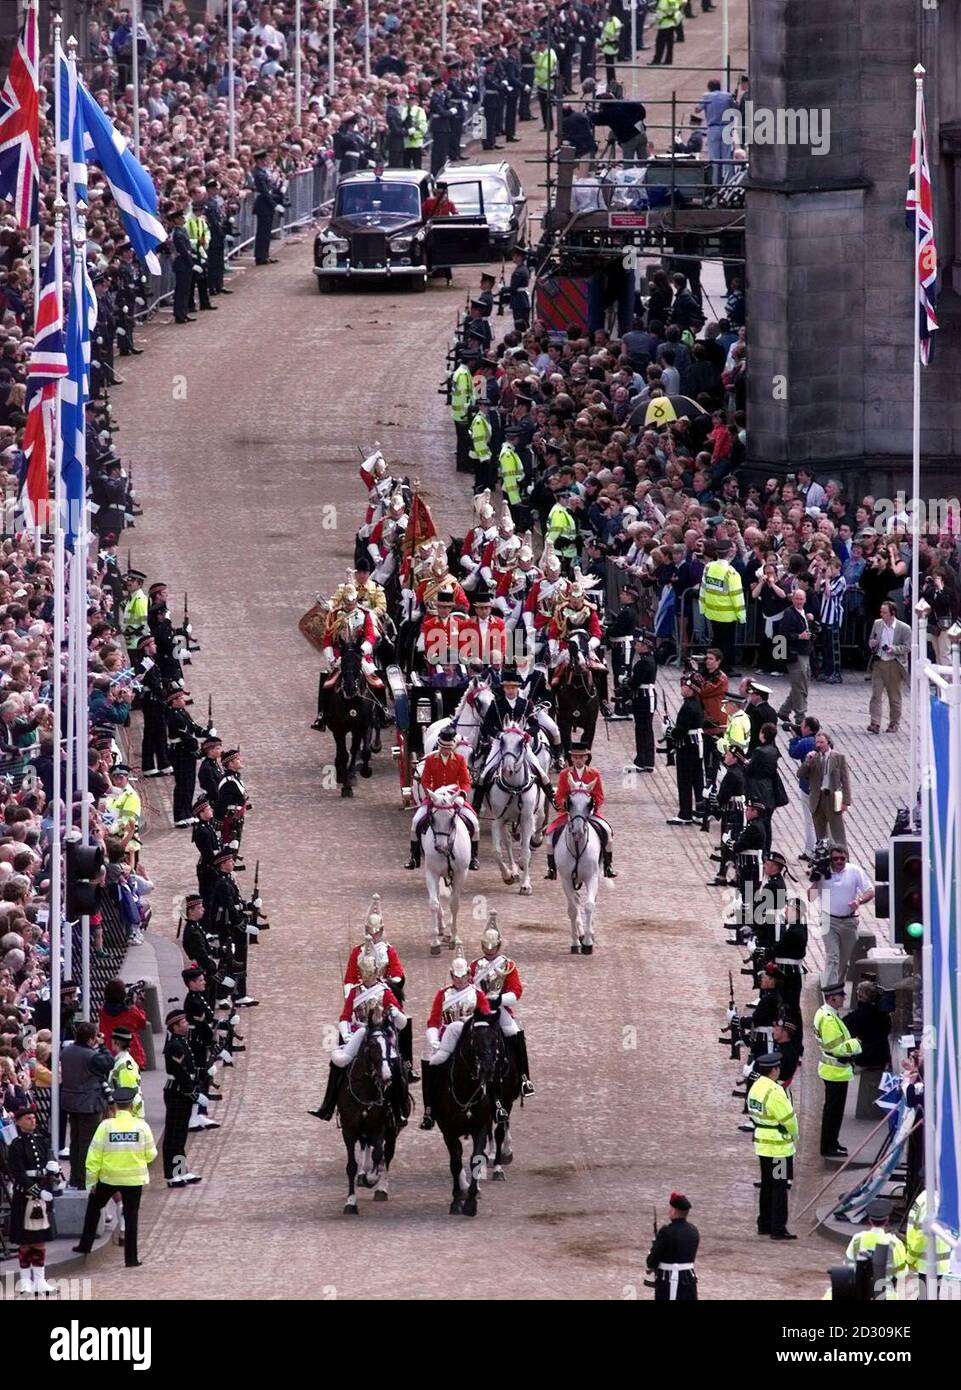 Die Königin, Prinz Philip und Prinz Charles, angeführt von der Household Cavalry, machen ihren Weg auf der Royal Mile vor der offiziellen Eröffnung des schottischen Parlaments der Königin in Edinburgh, wie aus dem Outlook Tower und Camera Obscura, Castlehill gesehen. Stockfoto